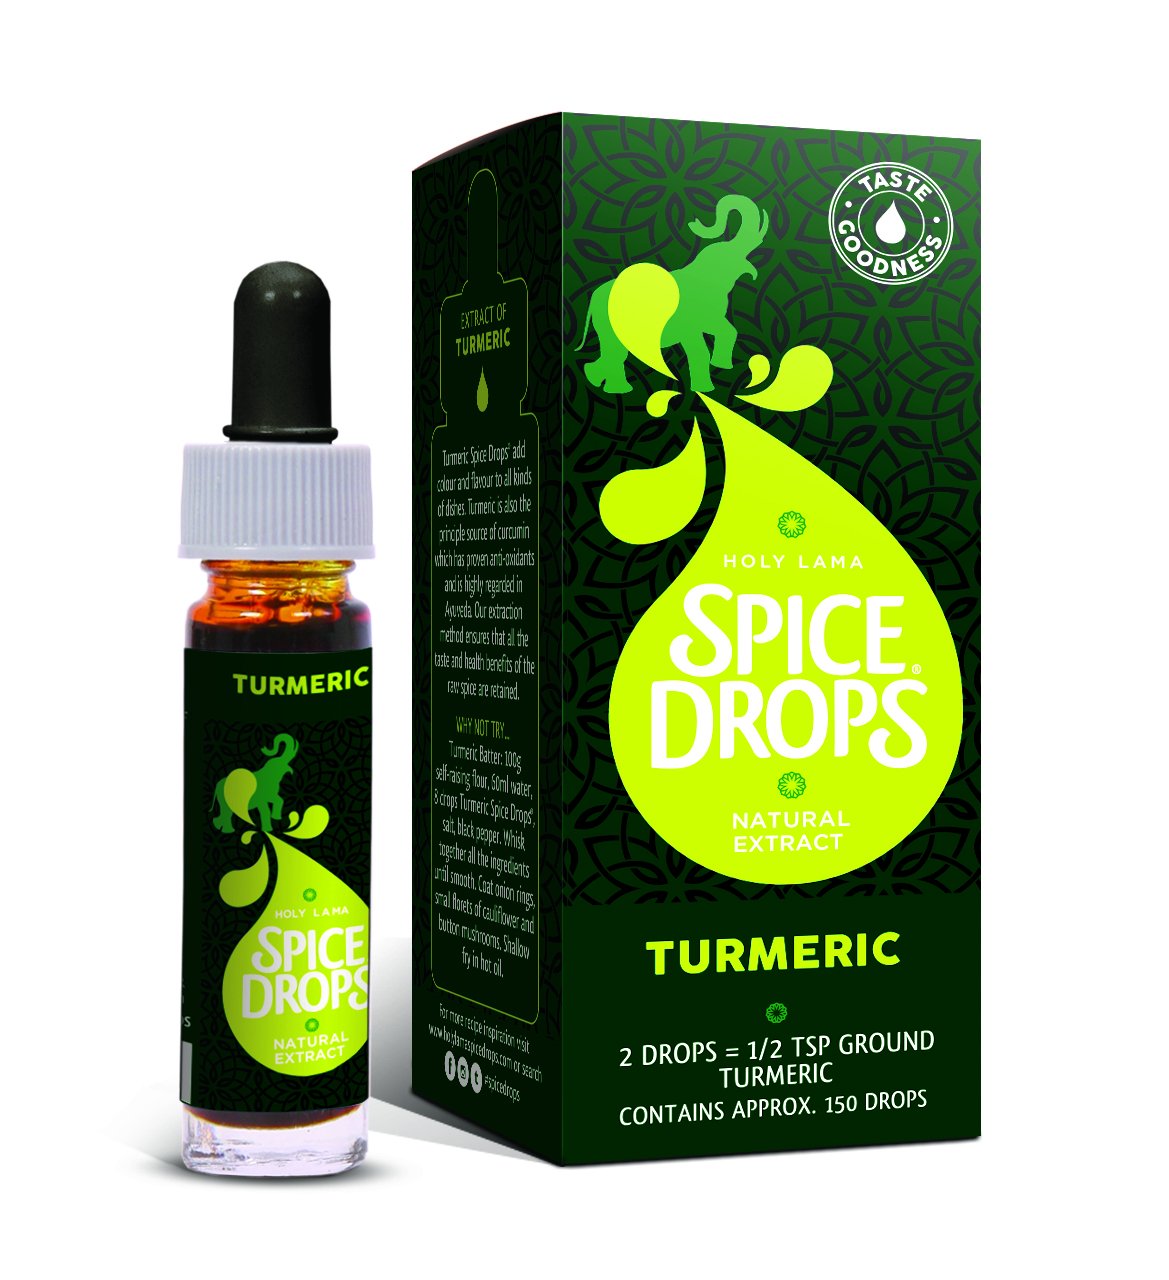 Holy Lama Turmeric Spice Drops 5ml